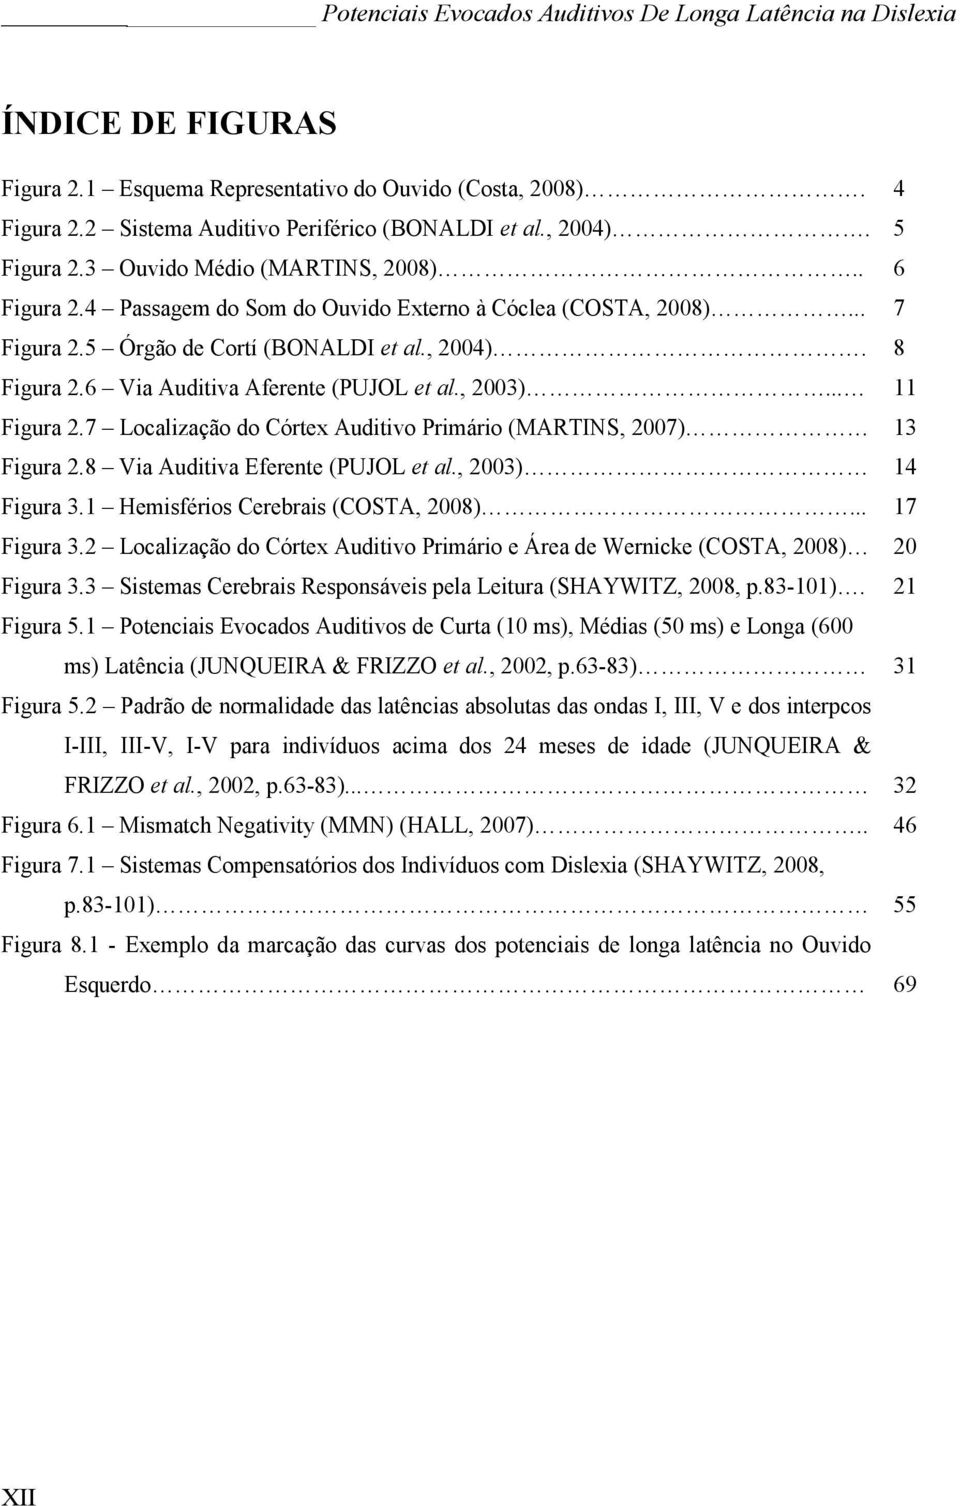 7 Localização do Córtex Auditivo Primário (MARTINS, 2007) 13 Figura 2.8 Via Auditiva Eferente (PUJOL et al., 2003) 14 Figura 3.1 Hemisférios Cerebrais (COSTA, 2008)... 17 Figura 3.